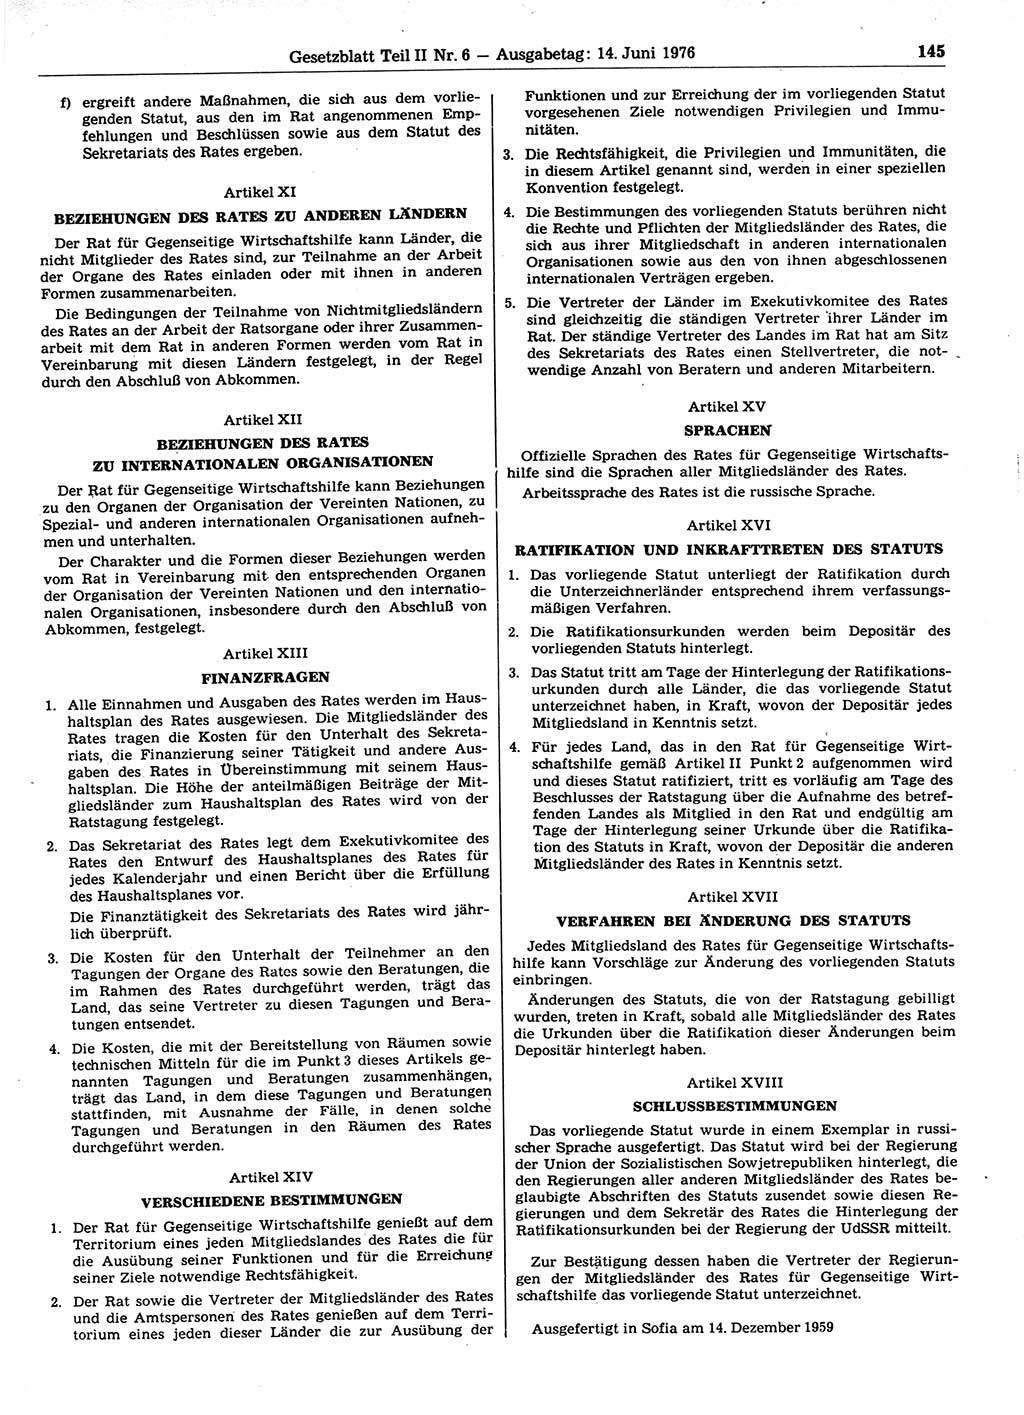 Gesetzblatt (GBl.) der Deutschen Demokratischen Republik (DDR) Teil ⅠⅠ 1976, Seite 145 (GBl. DDR ⅠⅠ 1976, S. 145)